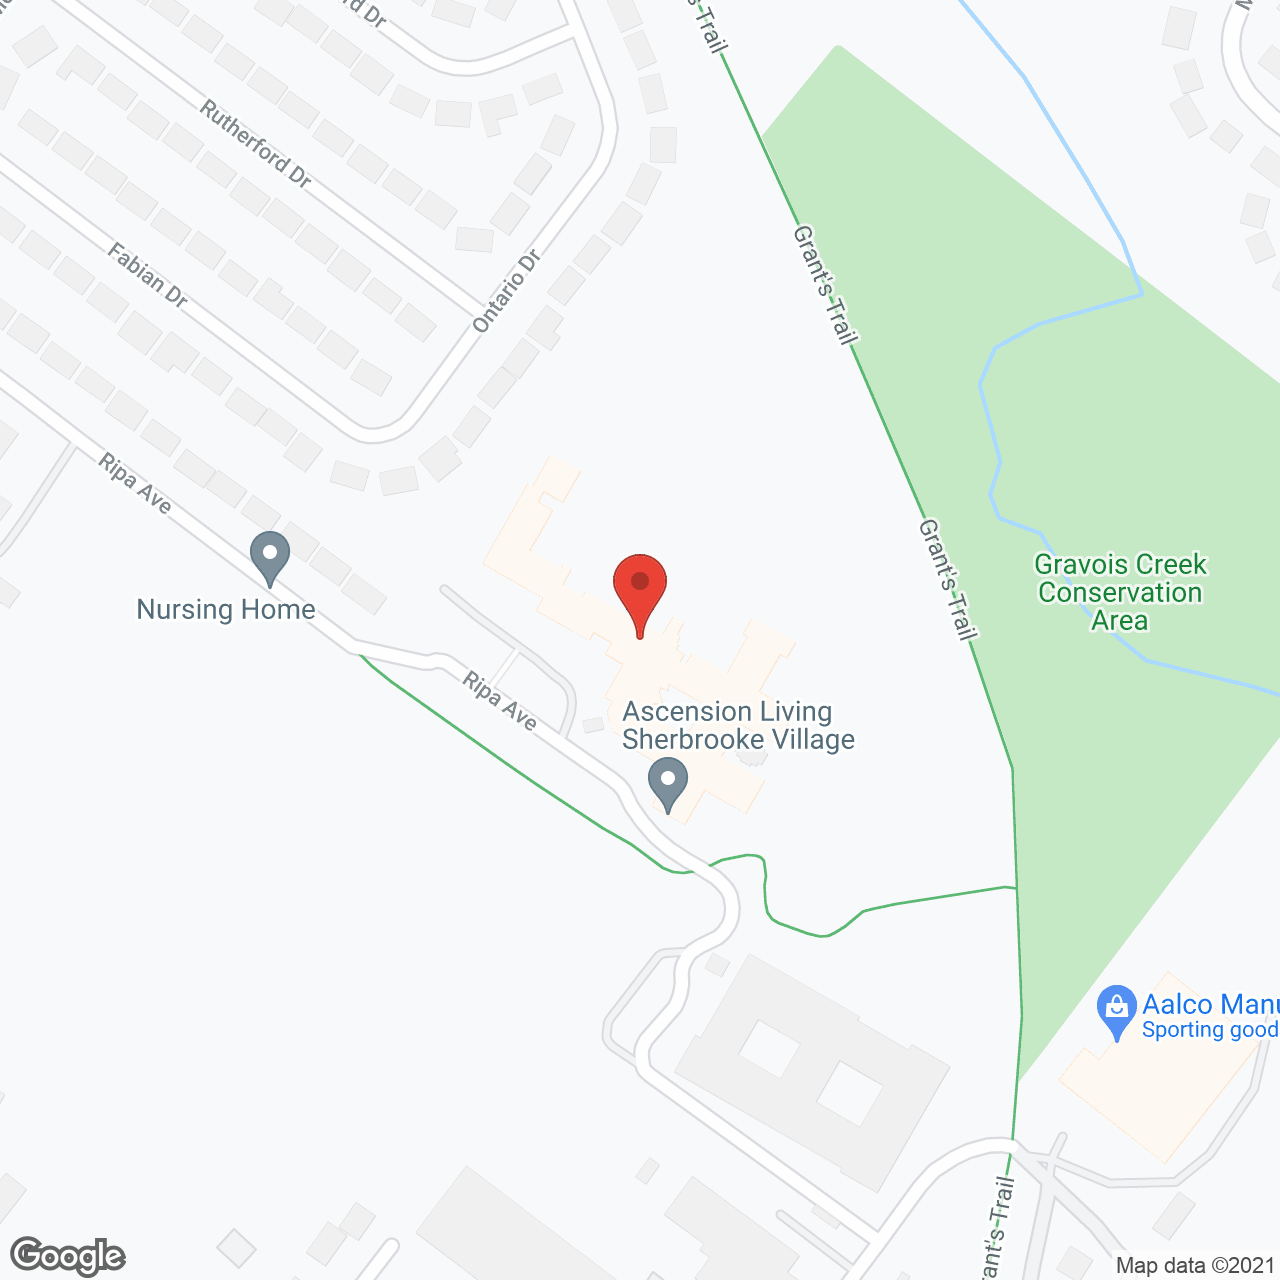 Ascension Living Sherbrooke Village in google map